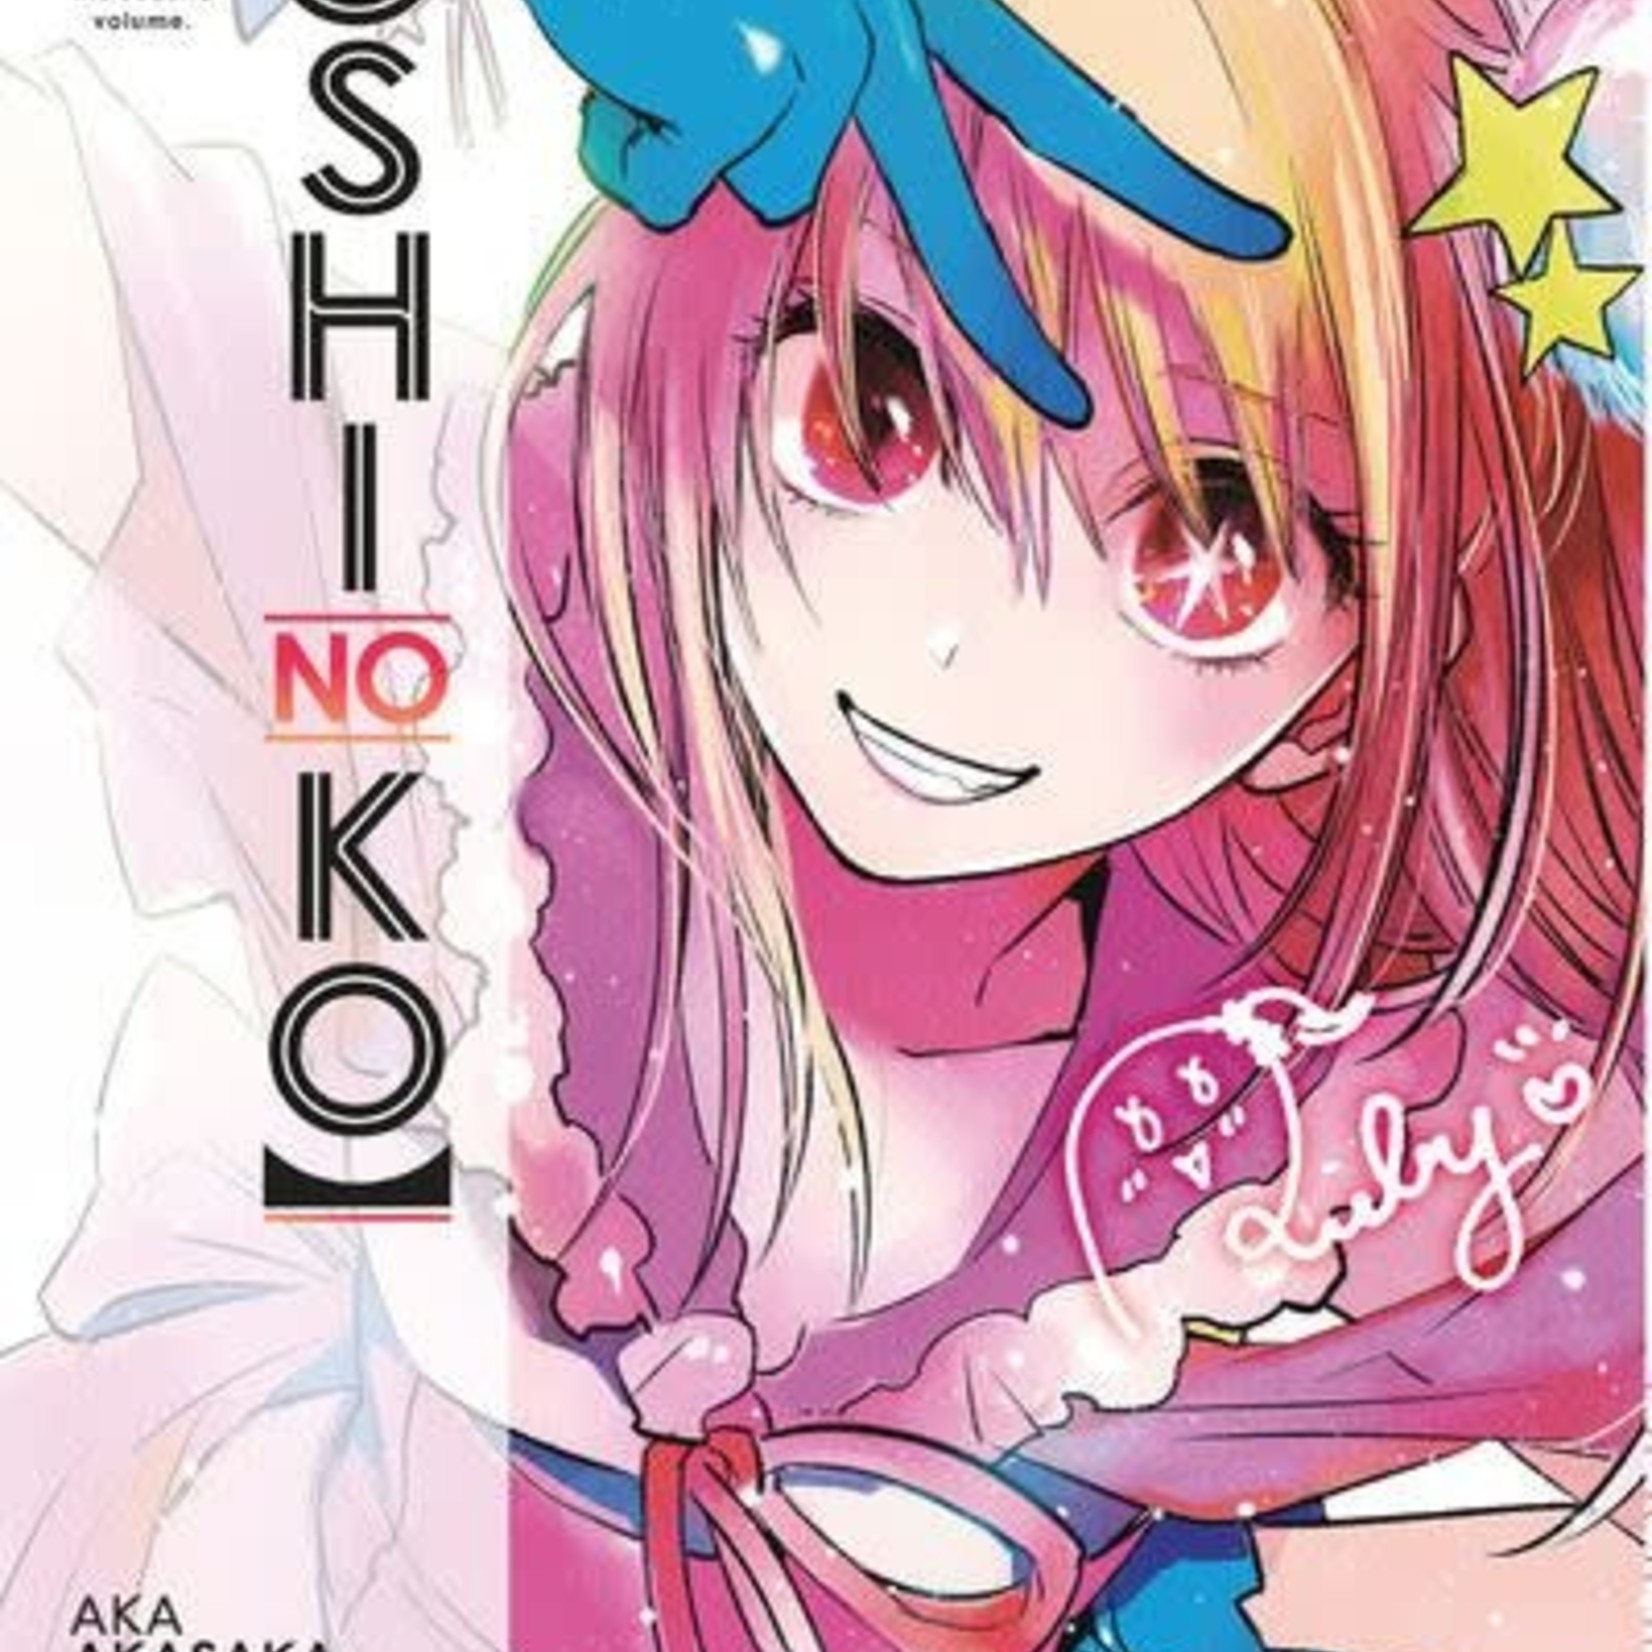 Kurokawa Manga - Oshi no Ko Tome 02